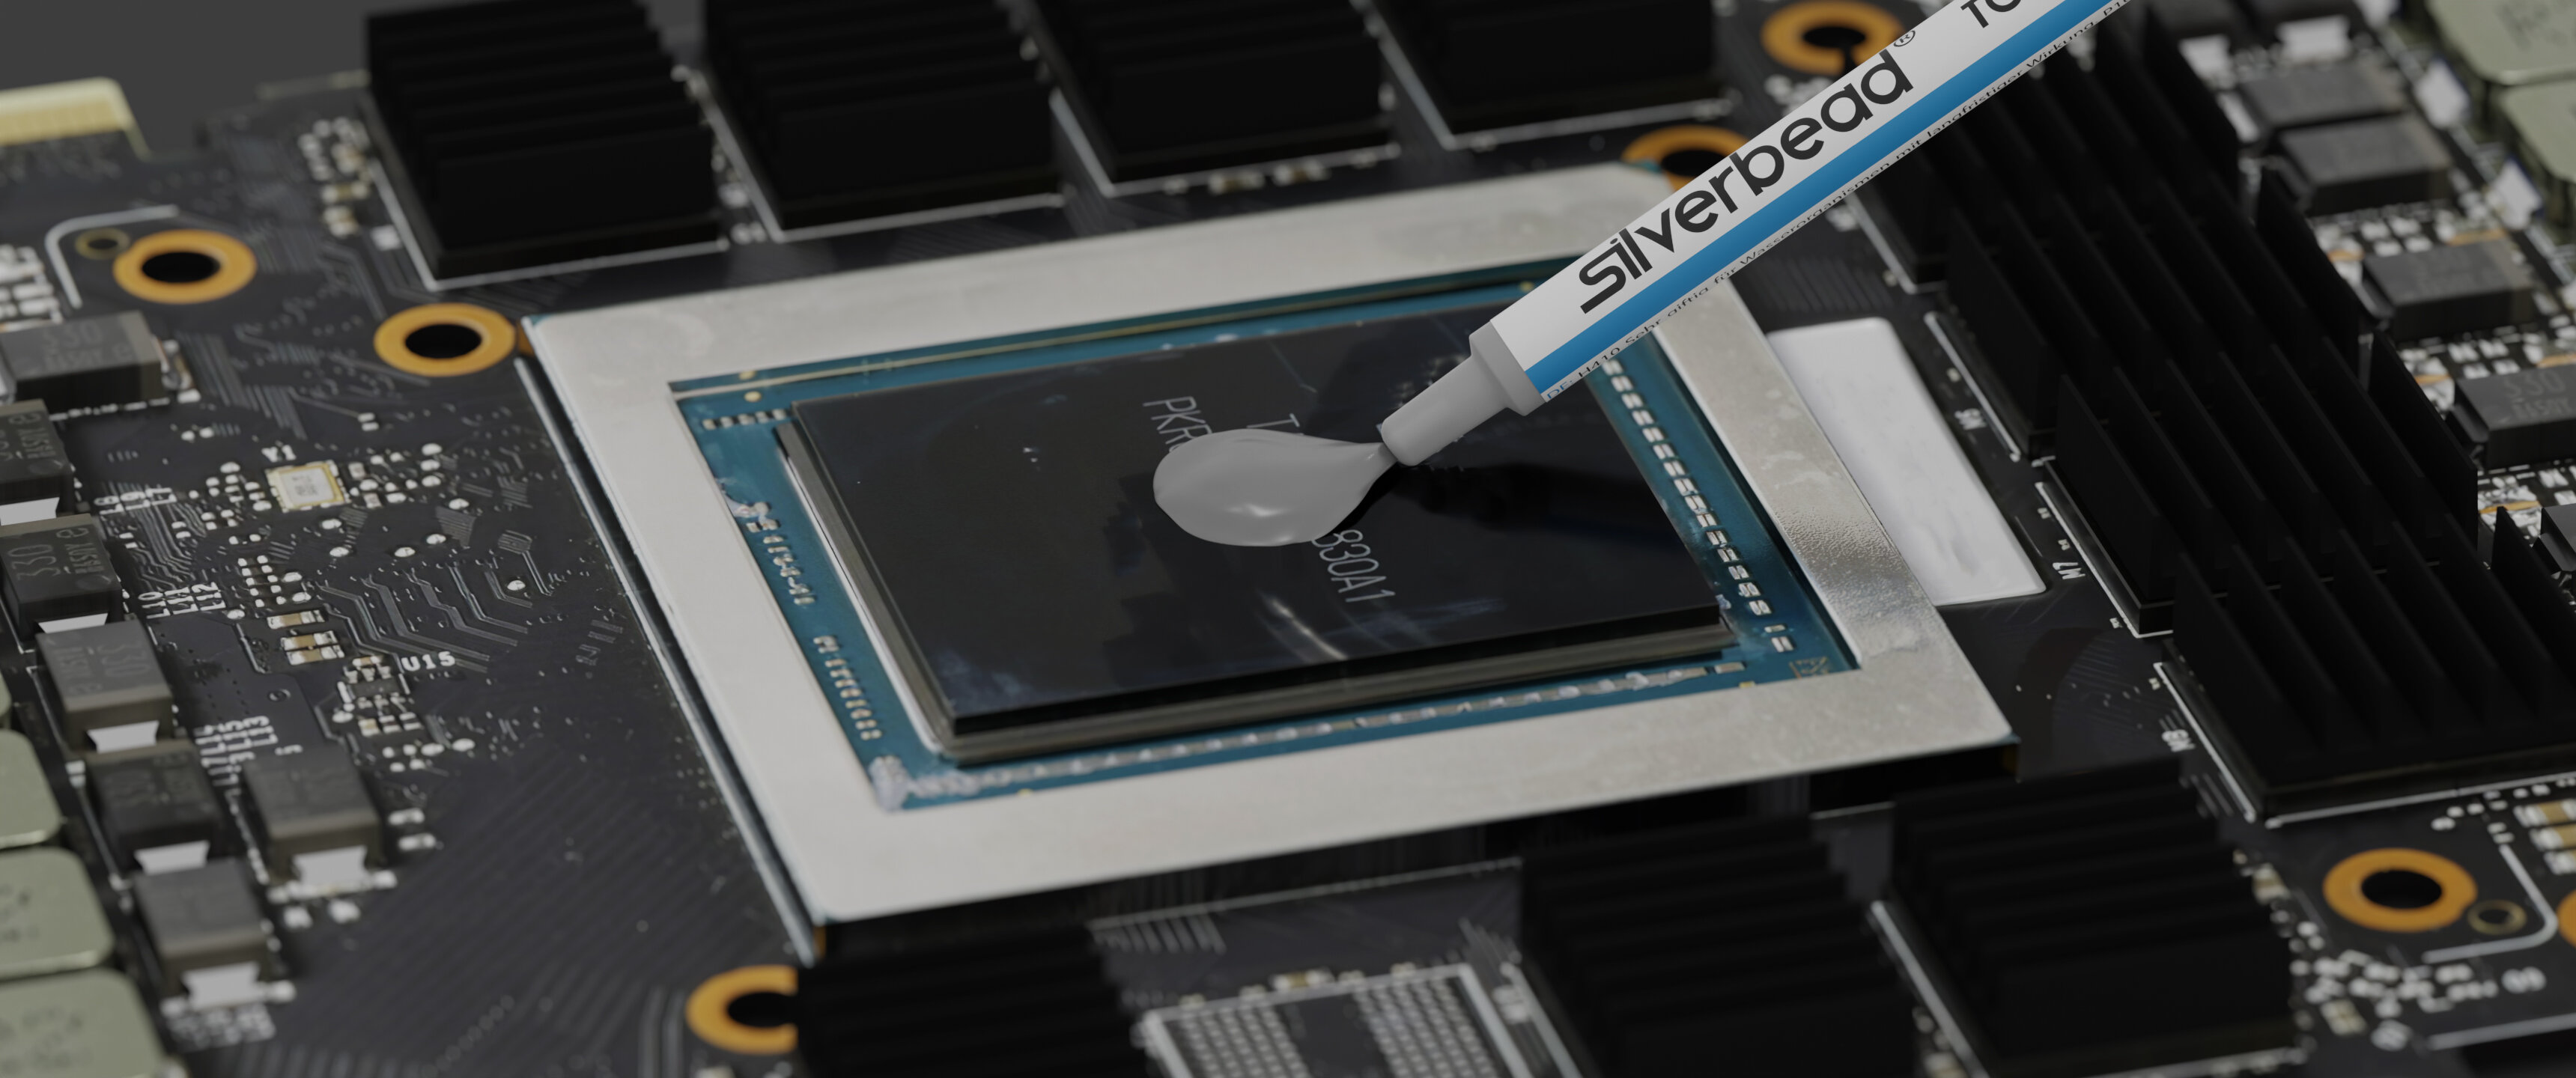 Silverbead Wärmeleitpaste TC-009 wird auf eine GPU aufgetragen